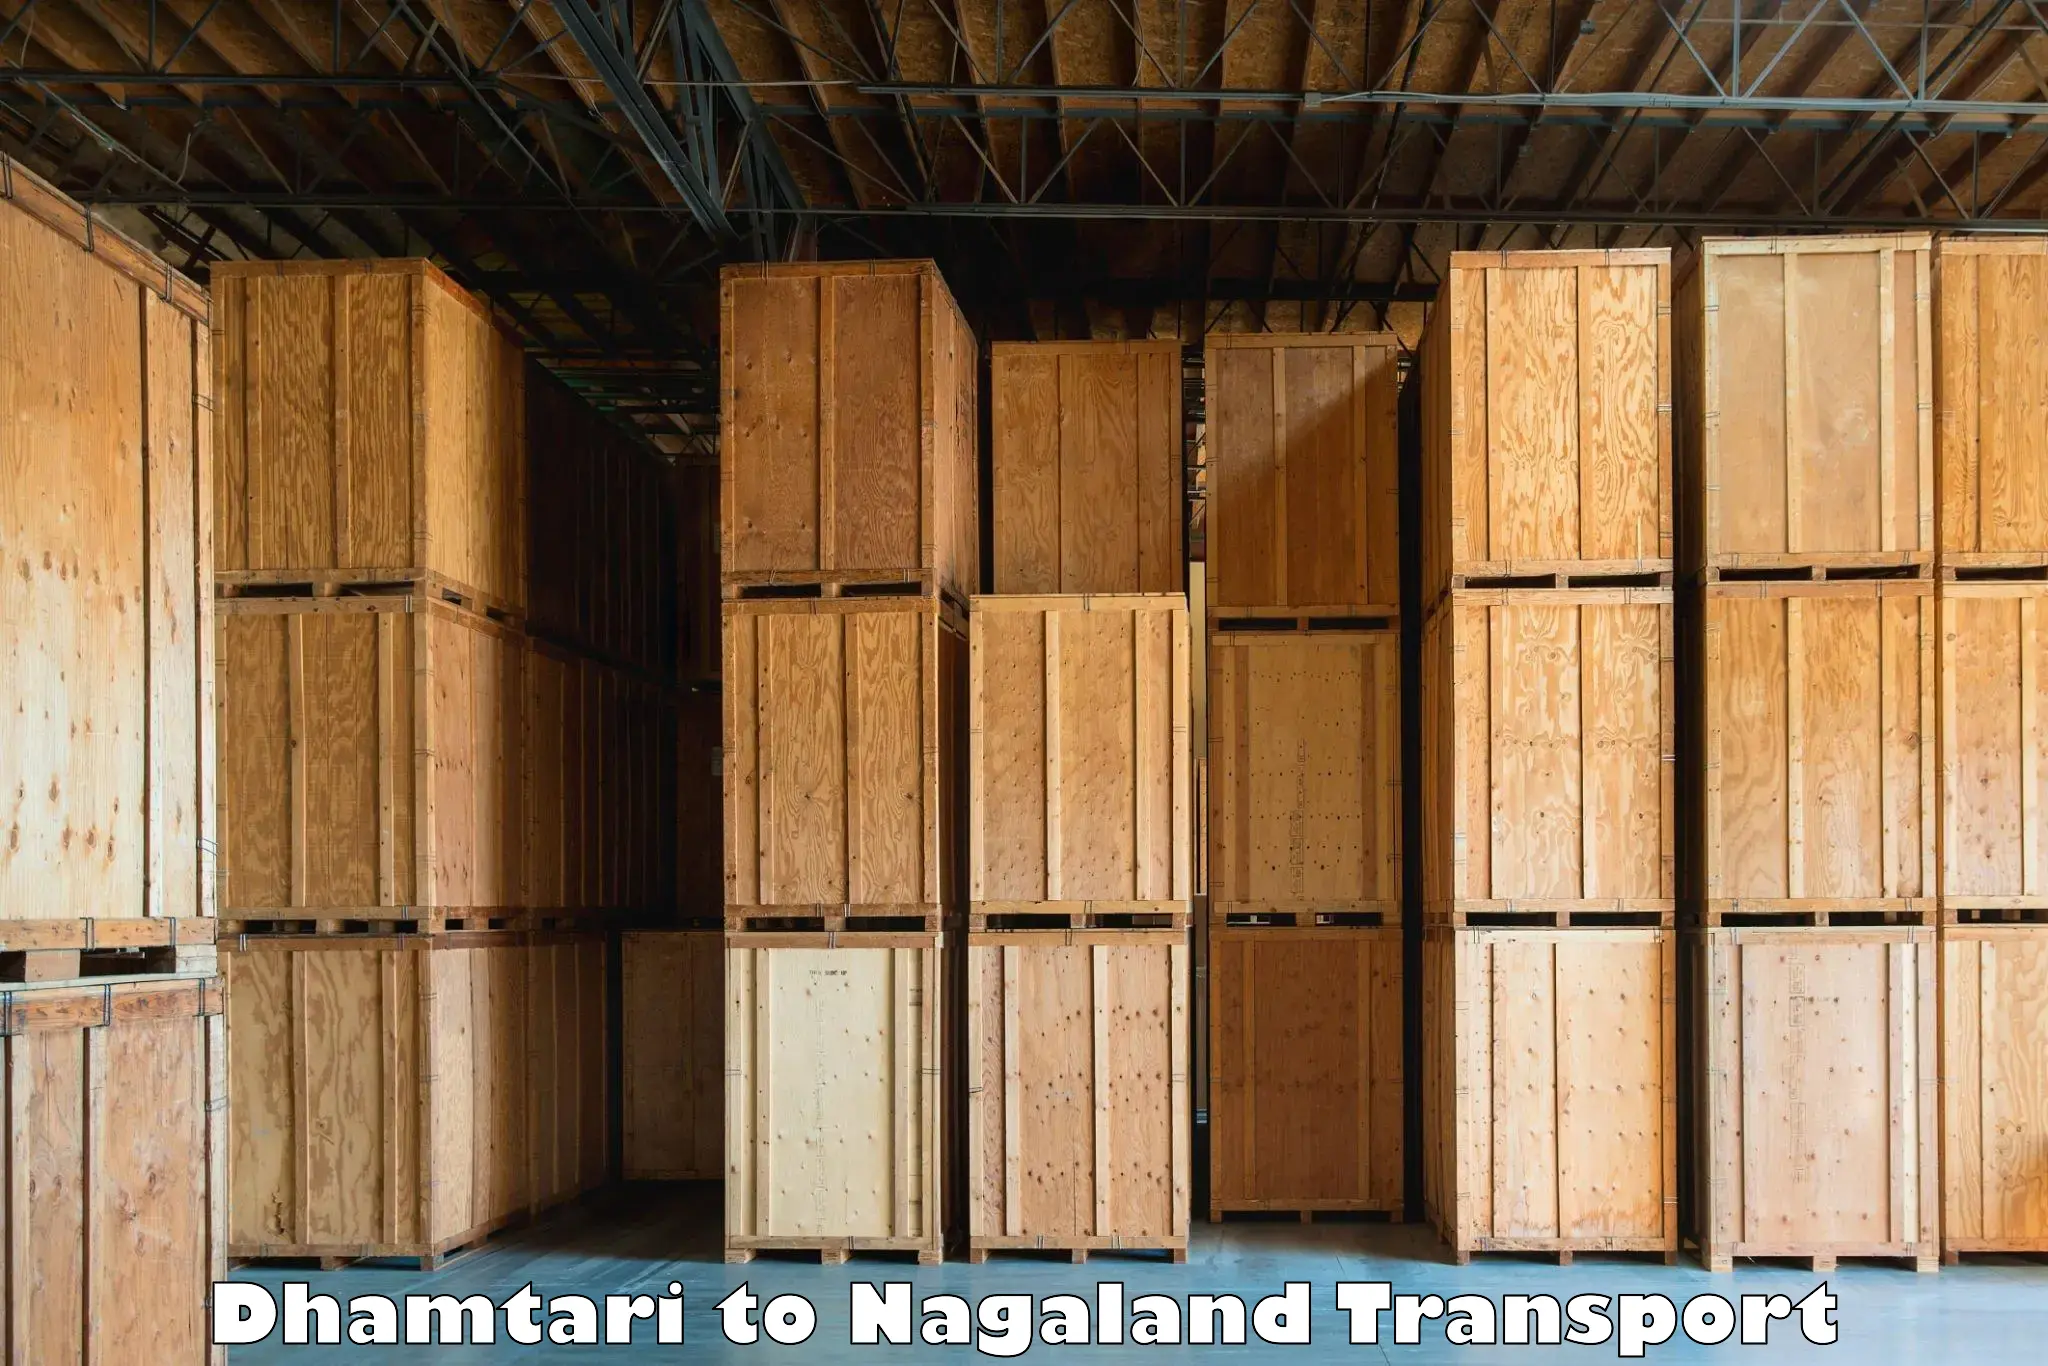 Transport in sharing Dhamtari to Dimapur